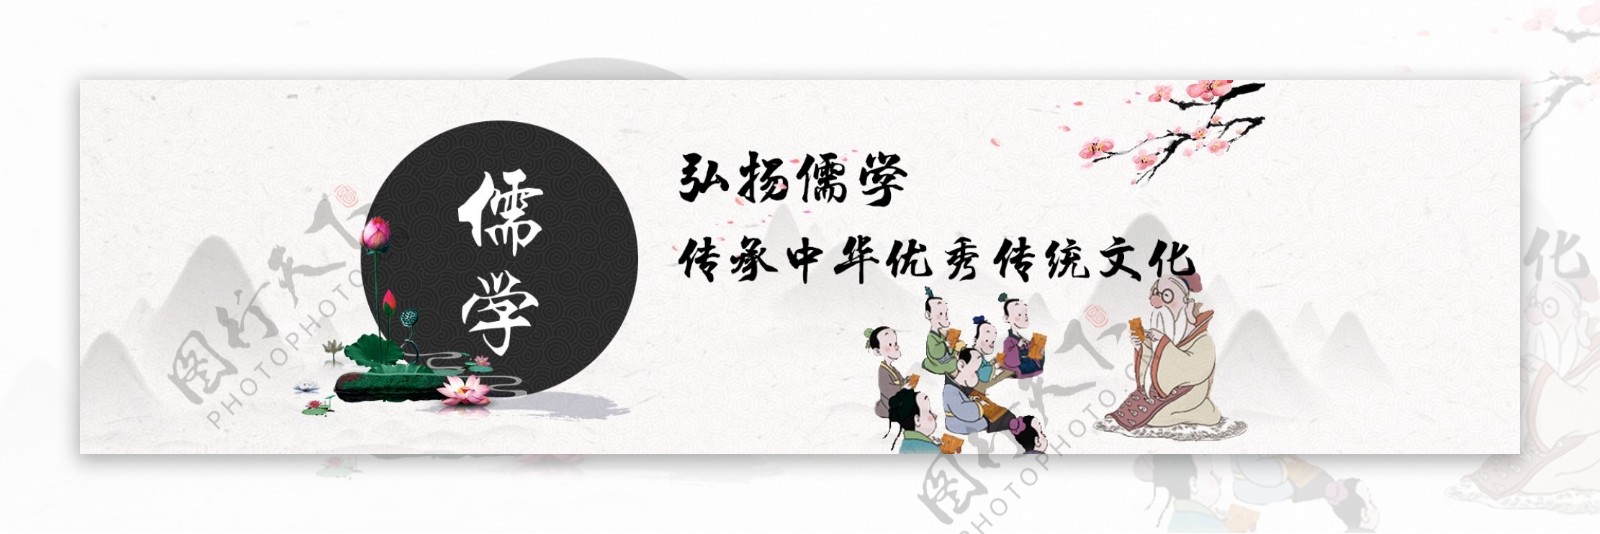 儒家文化海报设计